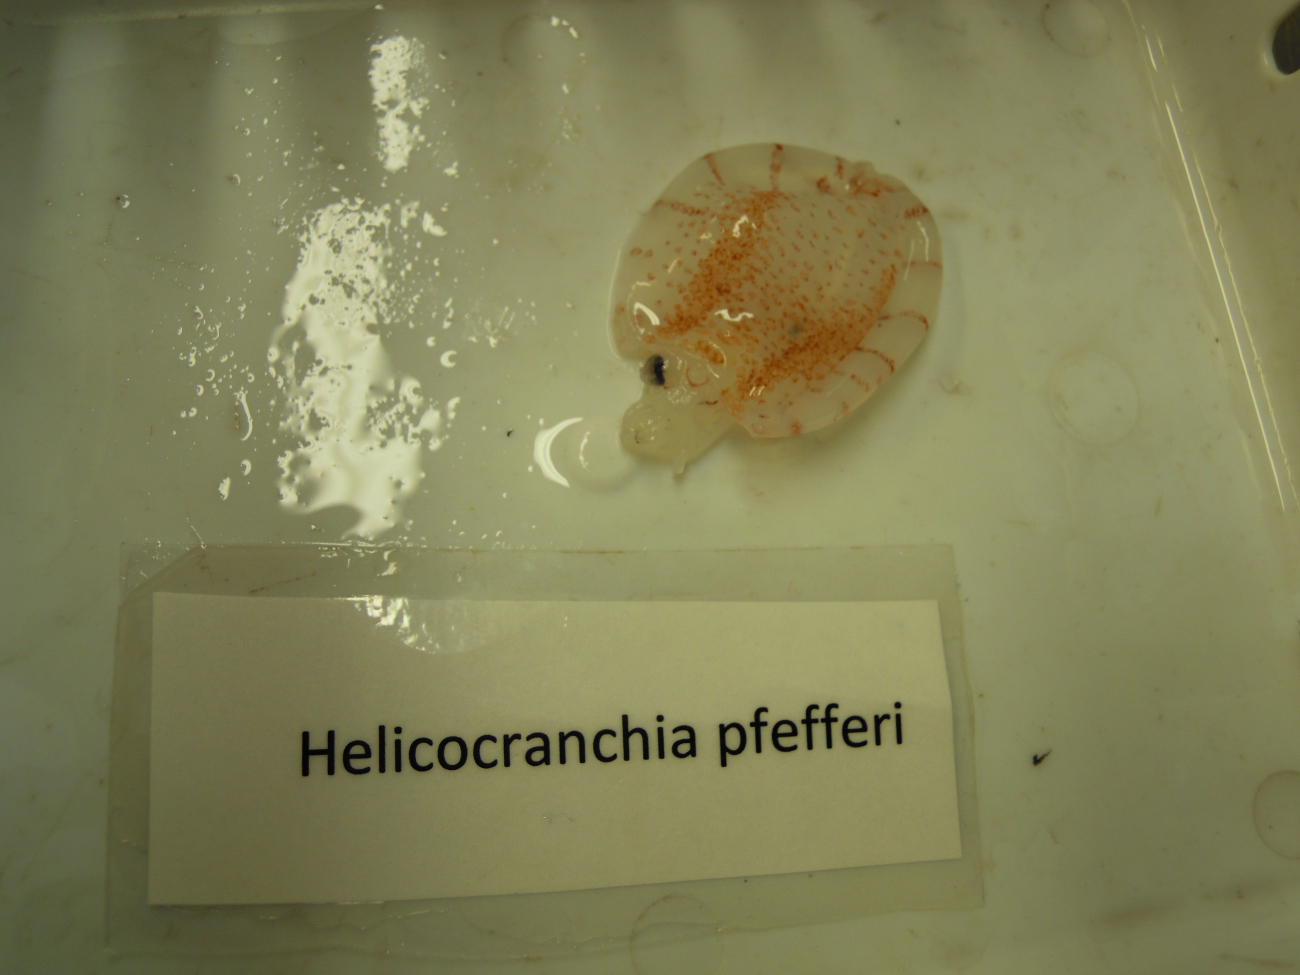 Baby squid (Helicocranchia pfefferi)